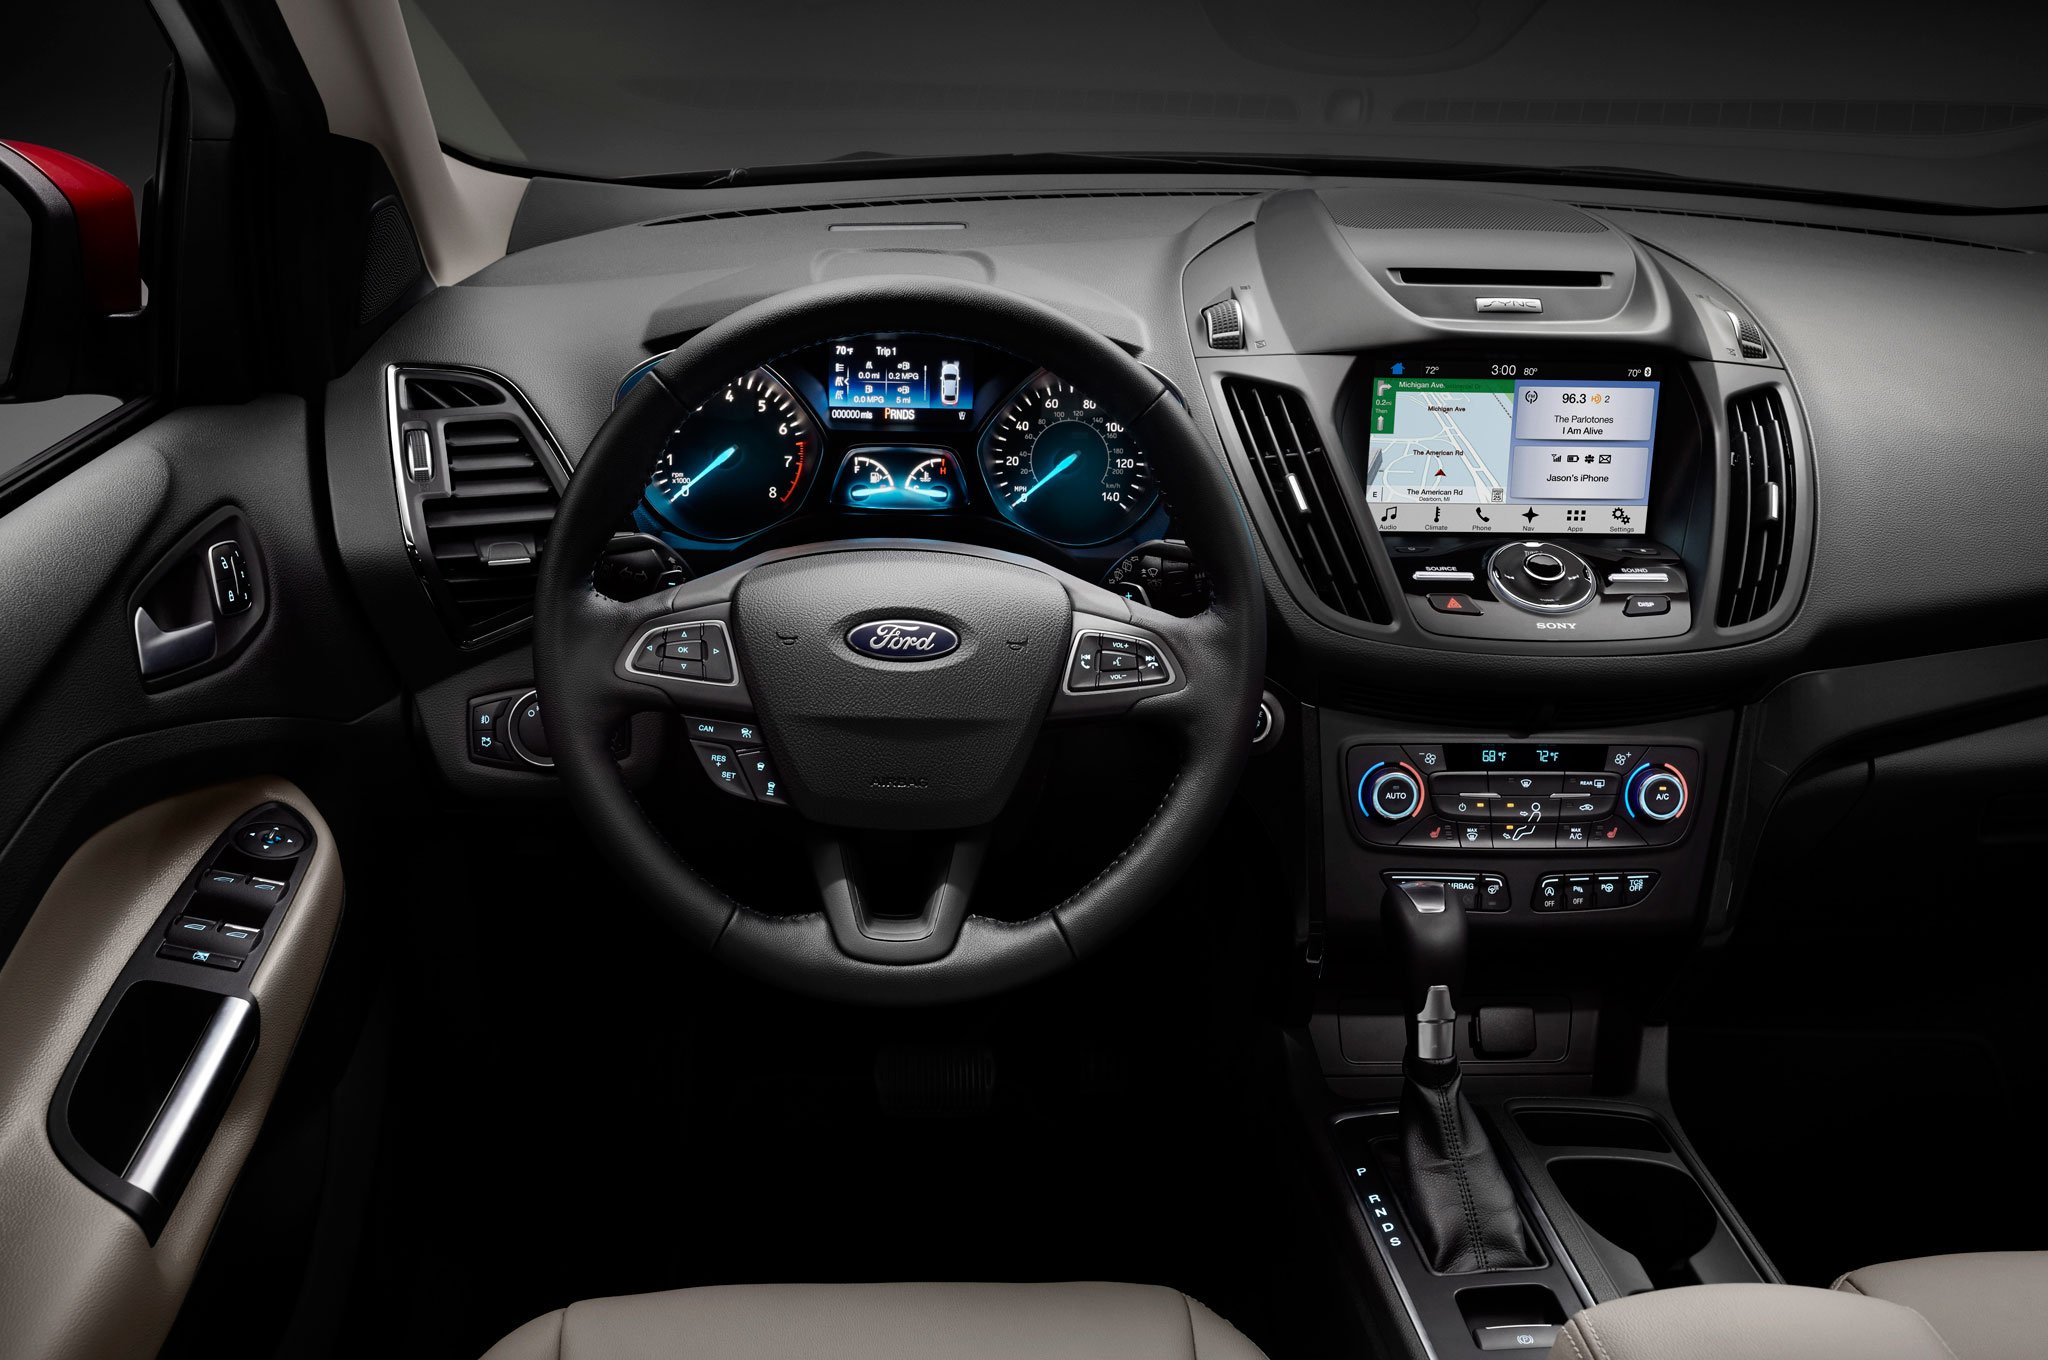 Купить новый Ford Kuga 2015 года в СПБ | Продажа Форд Куга ...